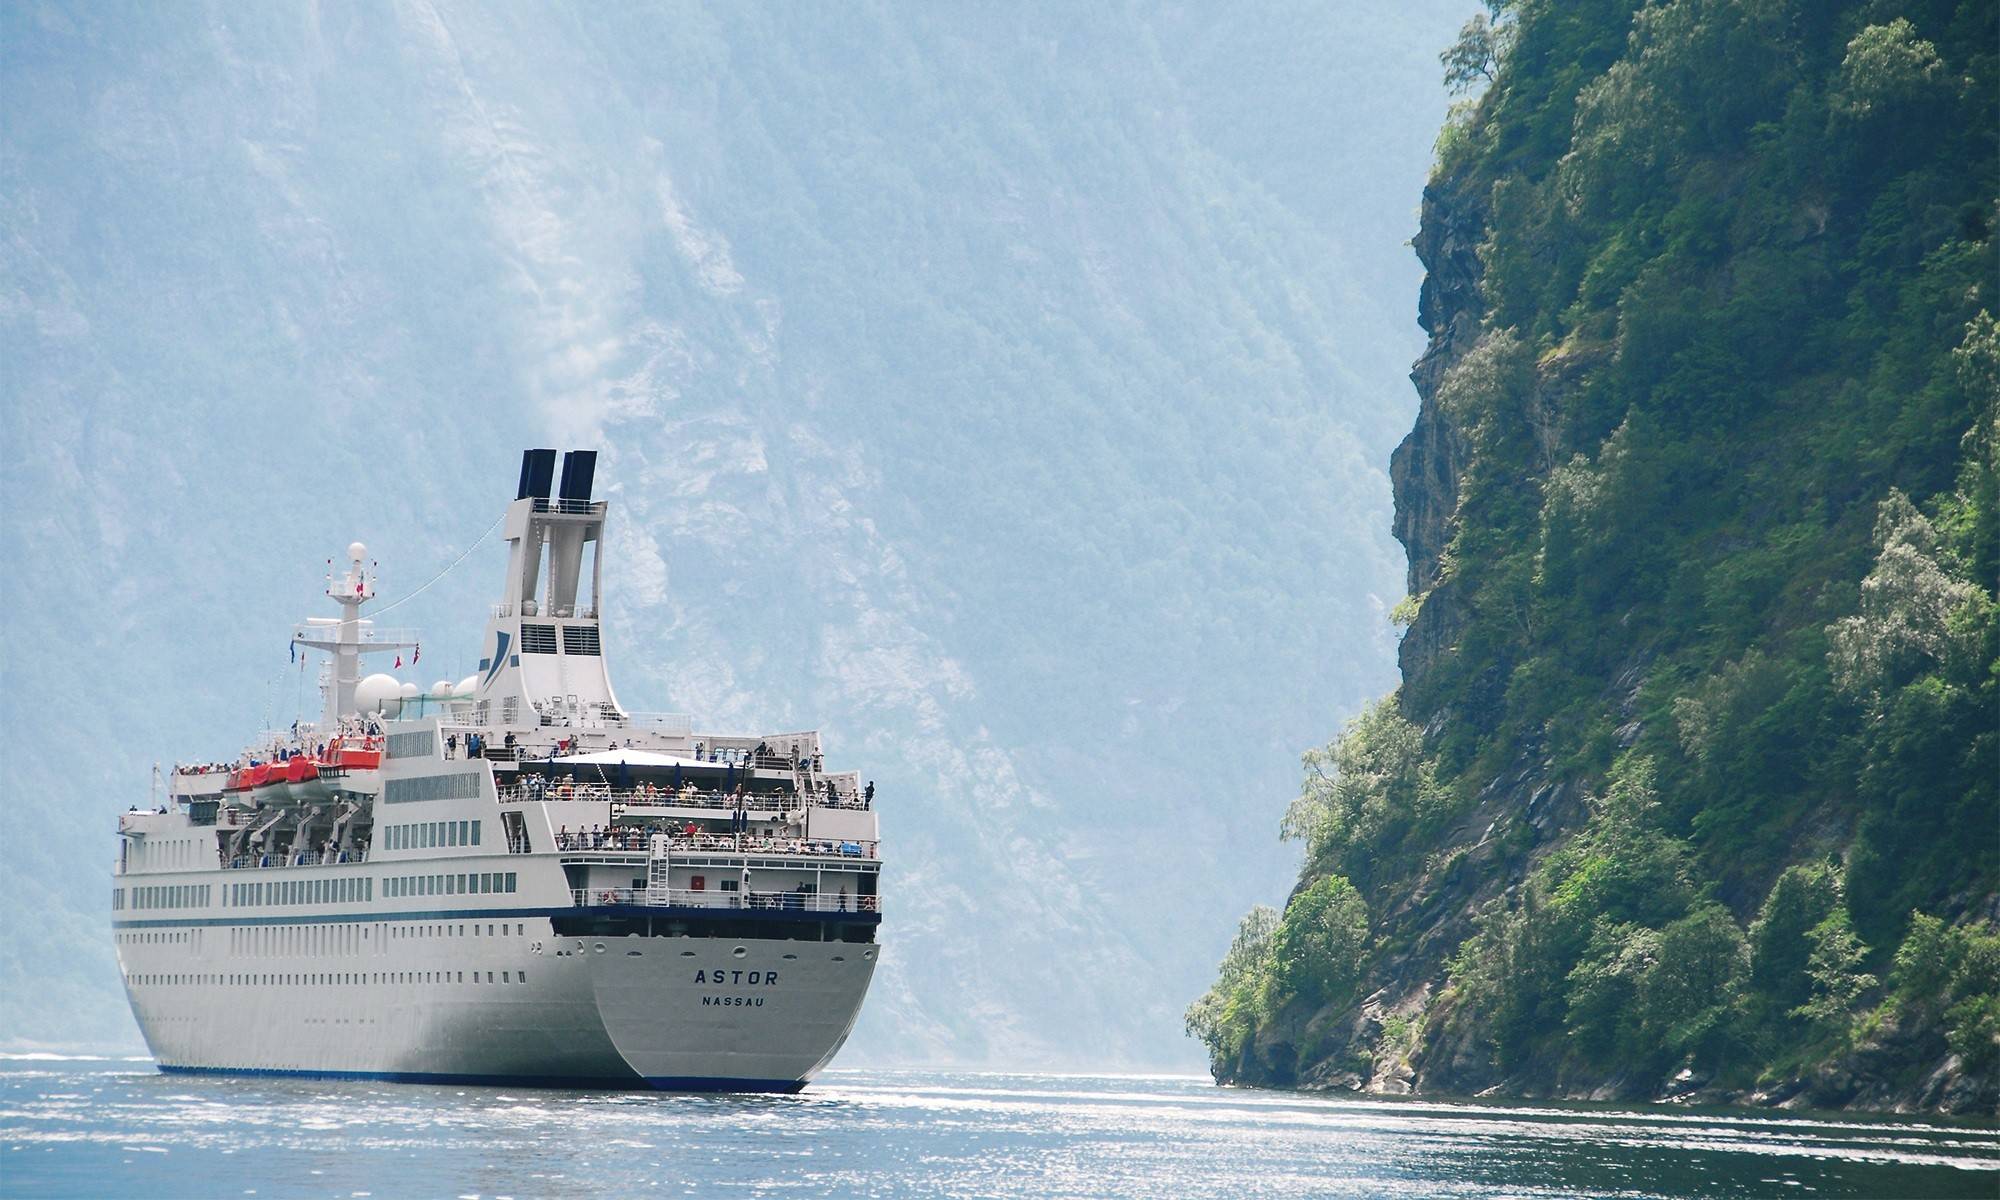 Astor Schiffsansicht in Norwegen